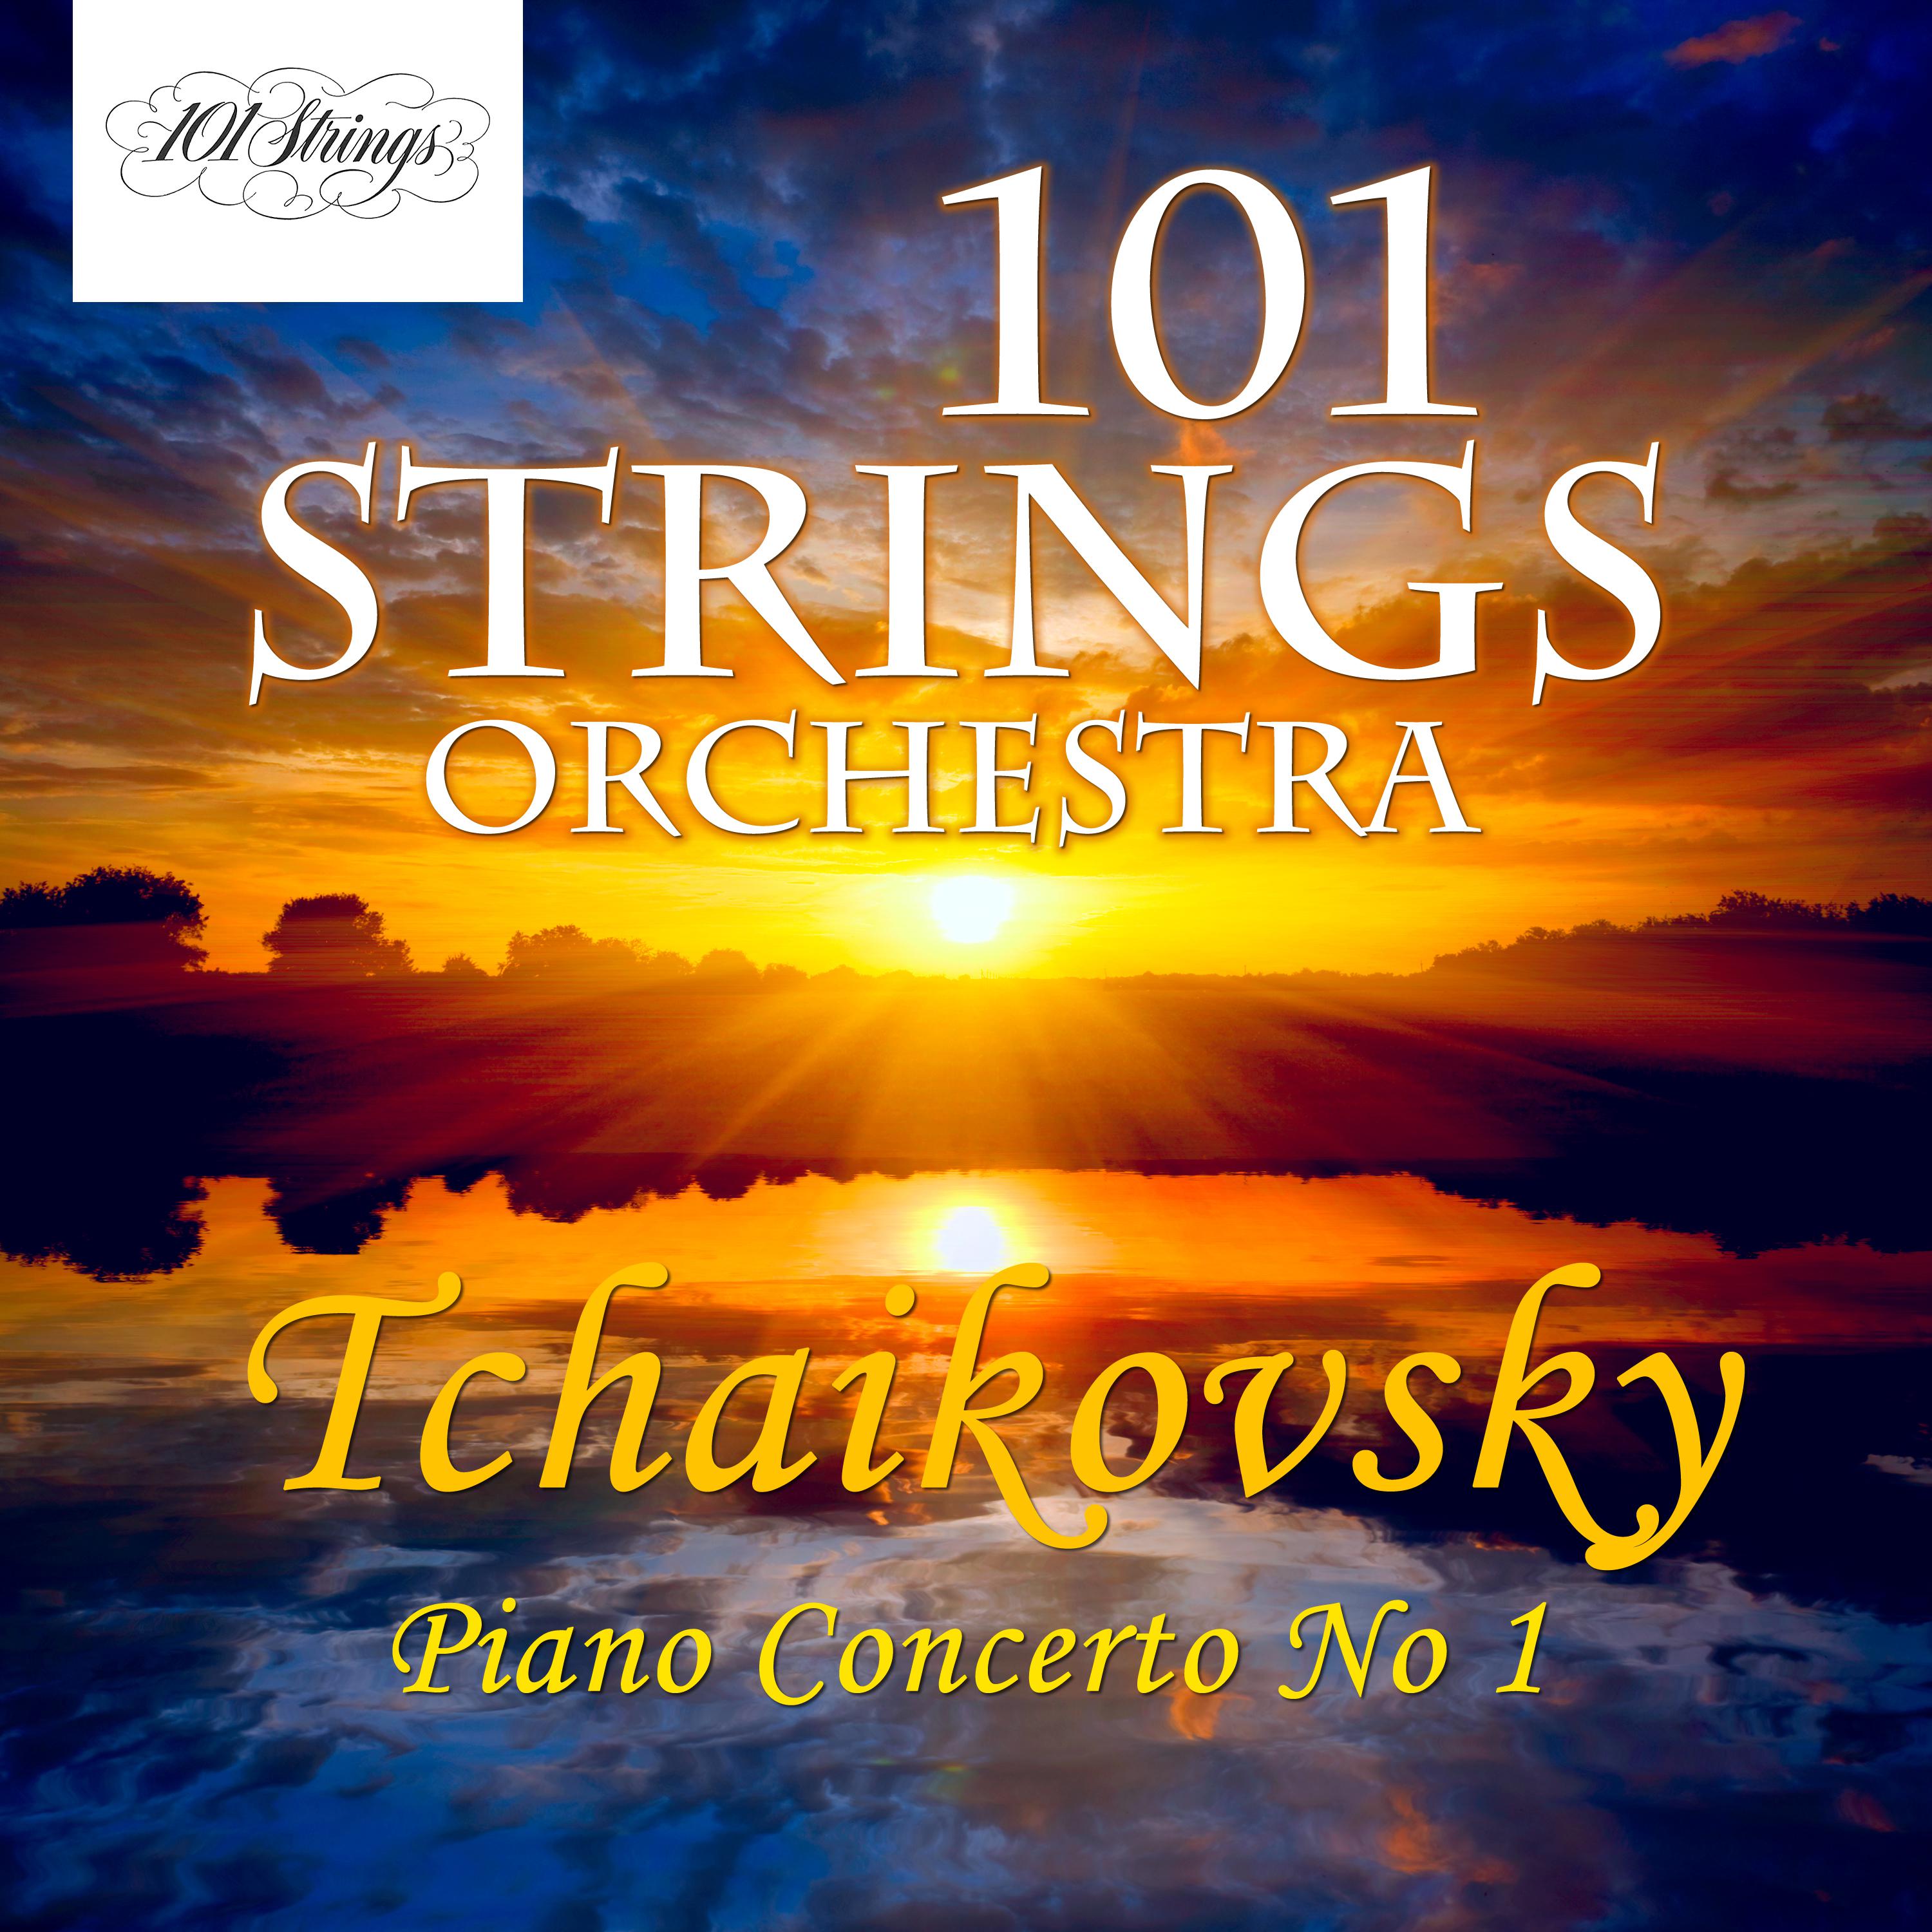 Pyotr Ilyich Tchaikovsky: Piano Concerto No.1 Opus 23, TH.55: 2. Andantino Semplice - Prestissimo - Tempo I